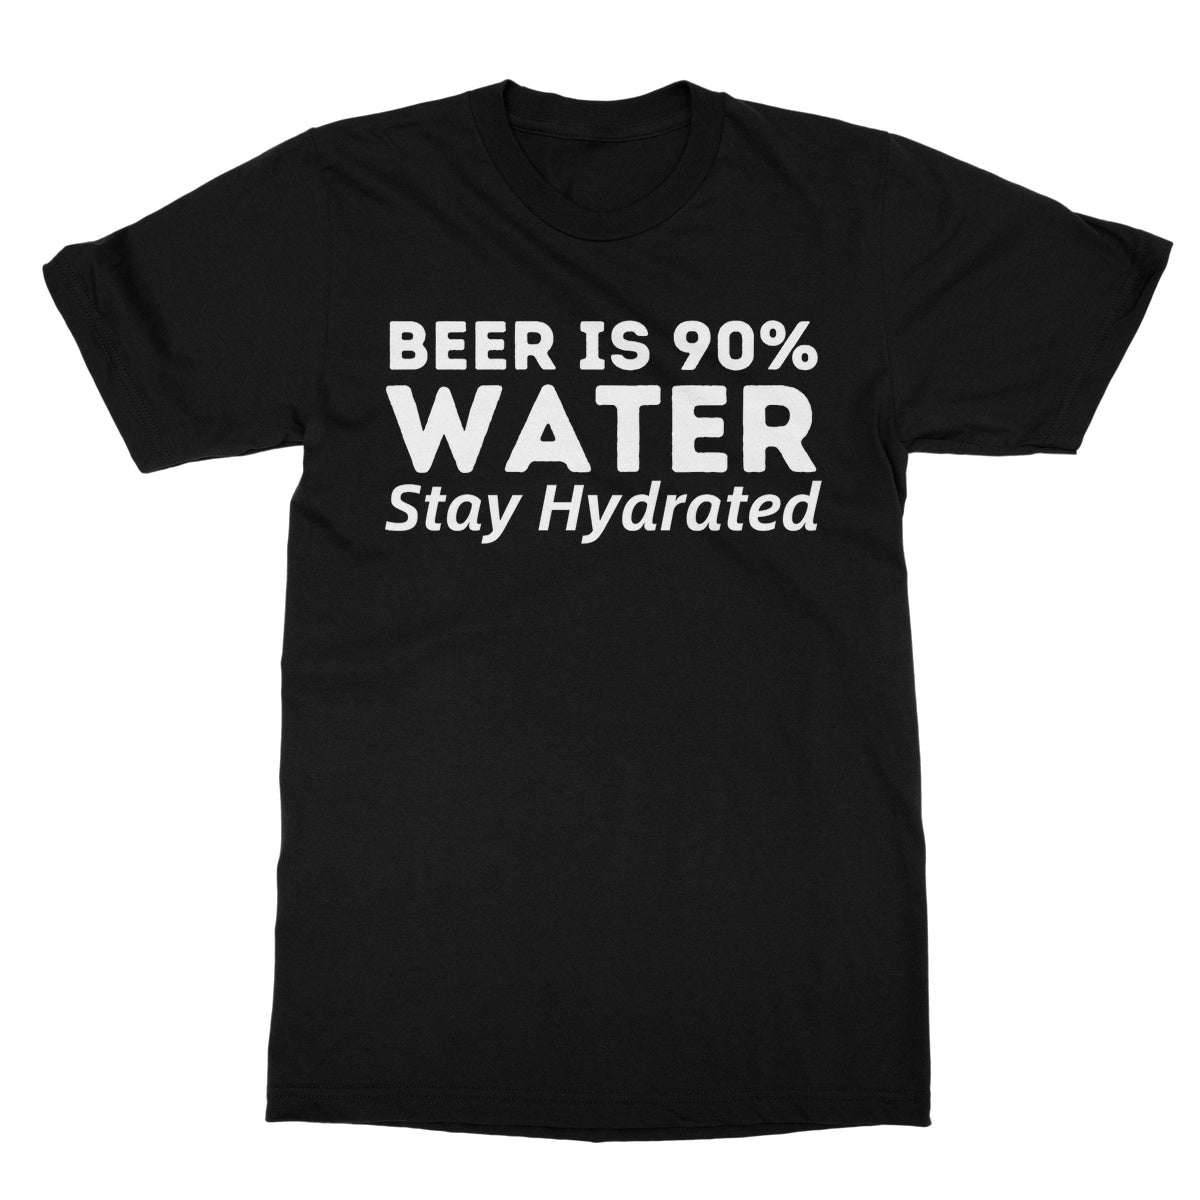 beer is 90% water t shirt black